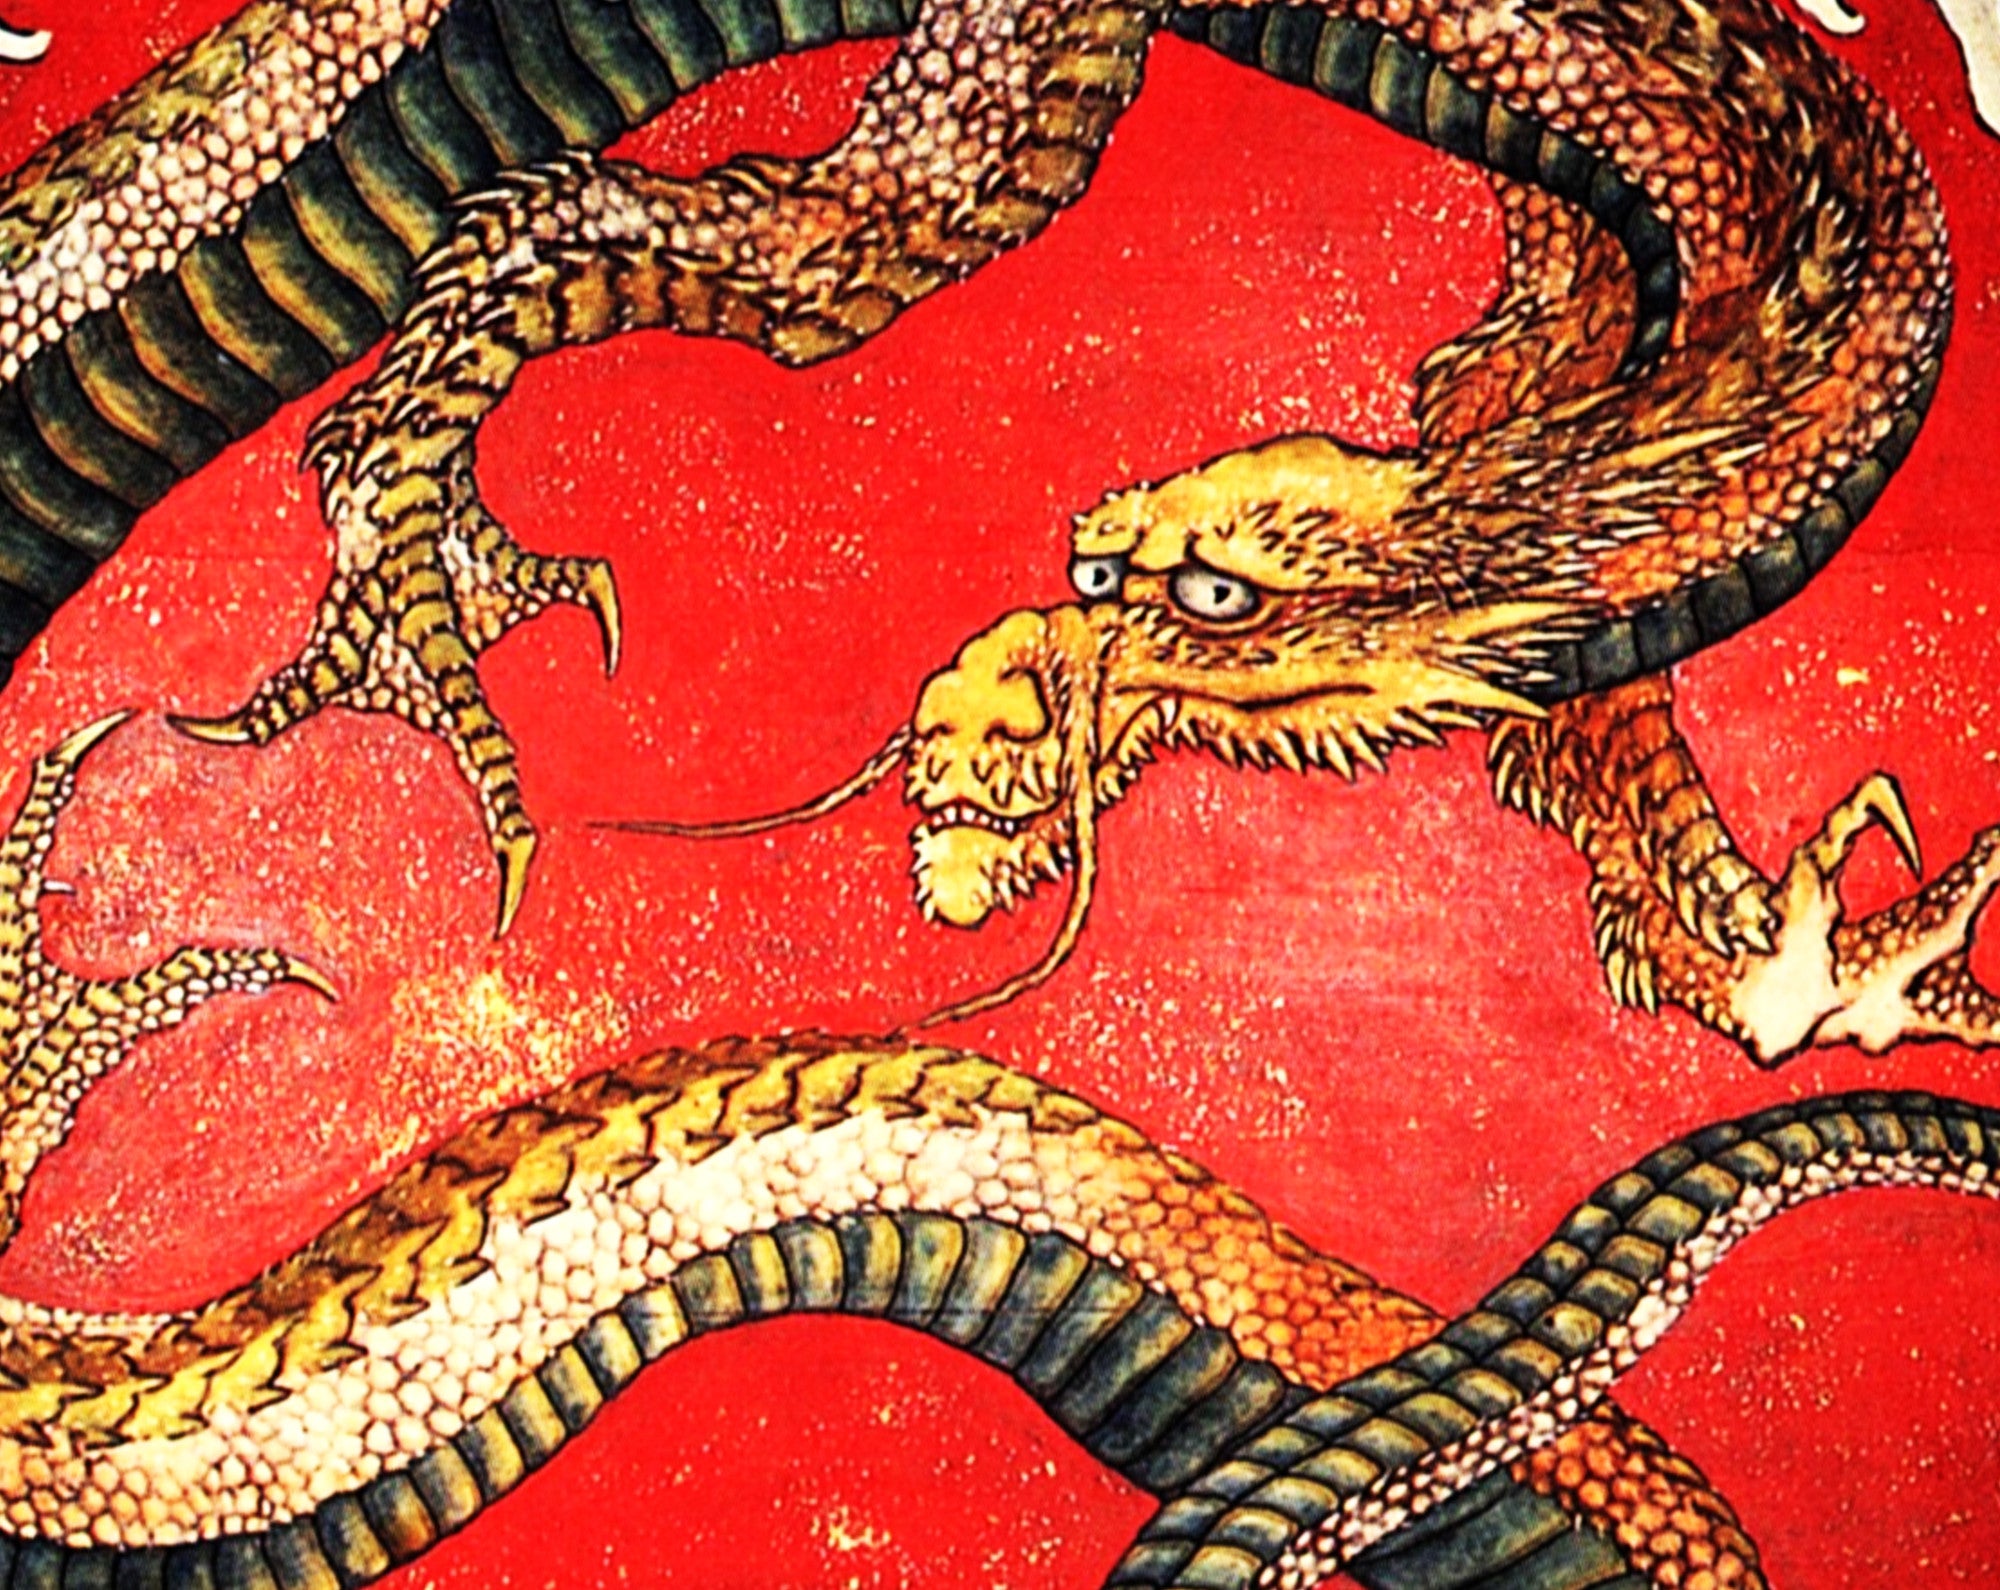 Matsuri Yatai Dragon, Katsushika Hokusai, Japanese Fine Art Print